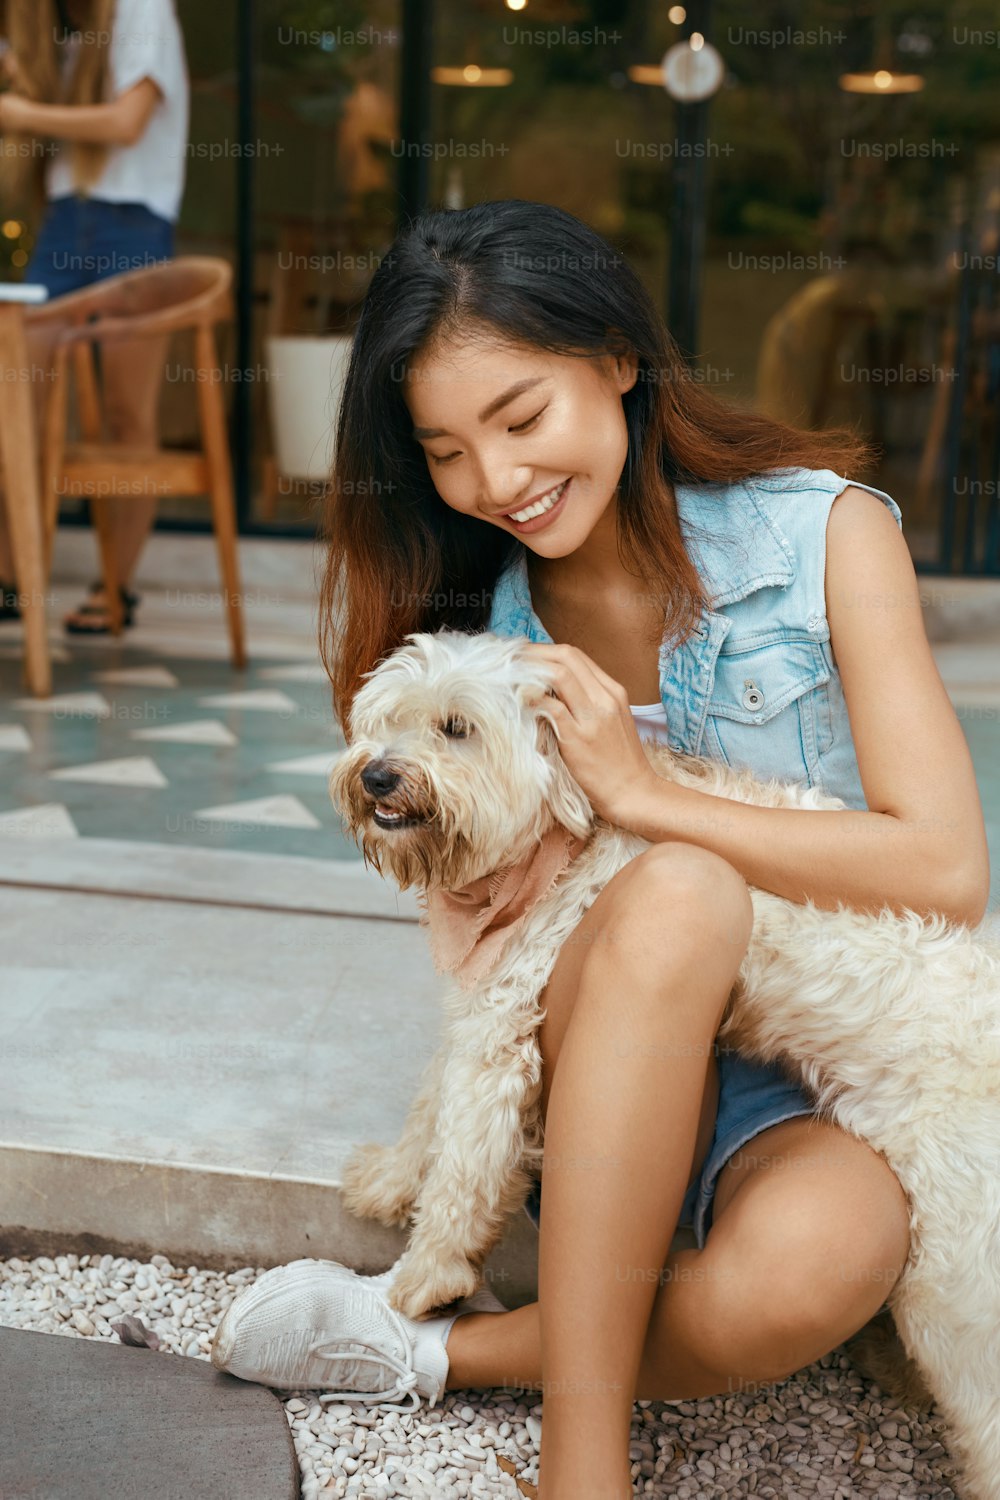 Asiatische Frau und Hund auf der Terrasse. Schönes Model in Jeans-Outfit spielt mit Welpe auf der Terrasse im hundefreundlichen Café. Glückliche Frau in modischer Kleidung umarmt Haustier und genießt Sommerurlaub.